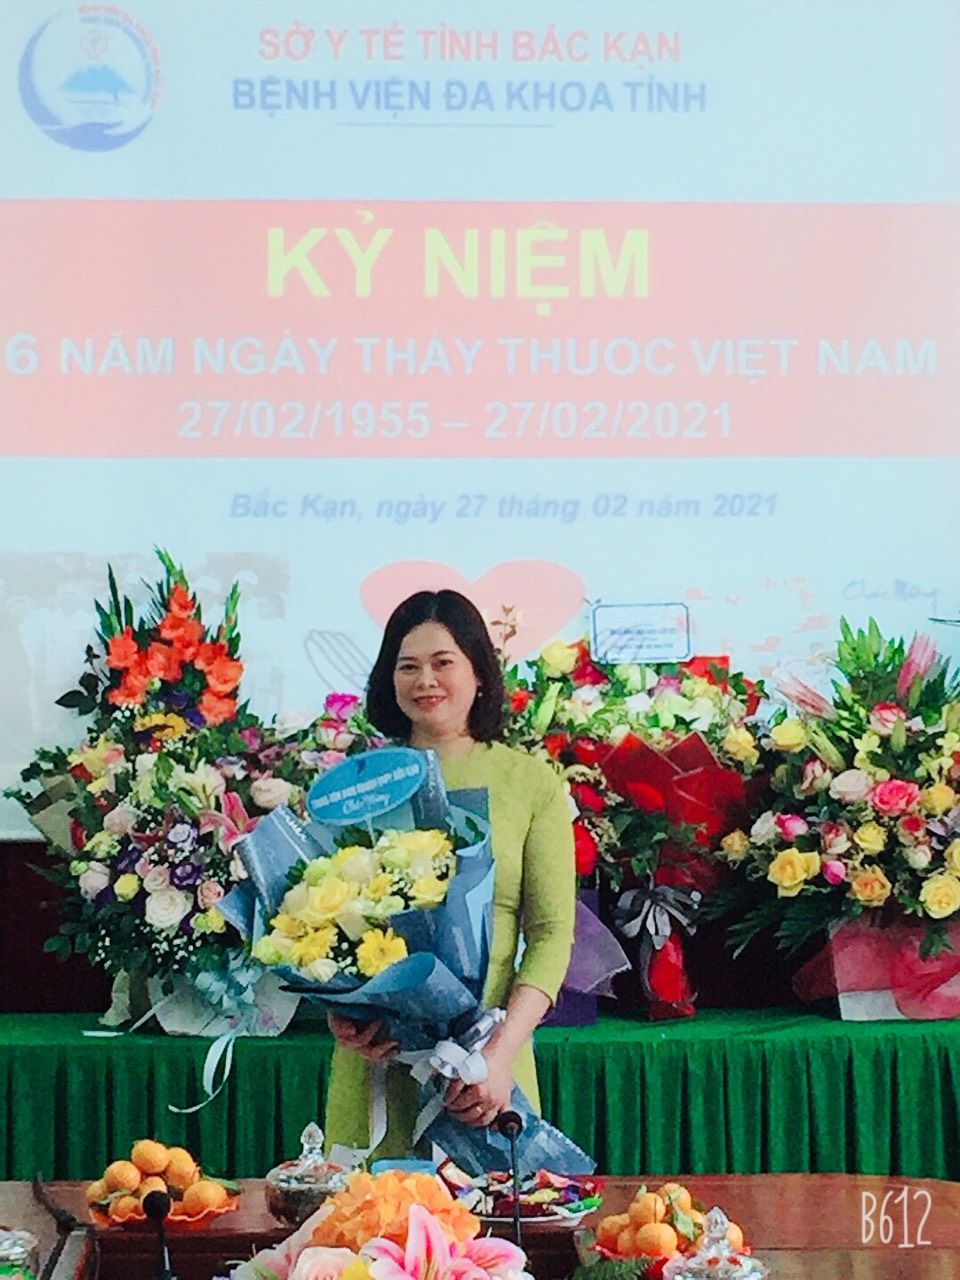 Trần Thị Hằng